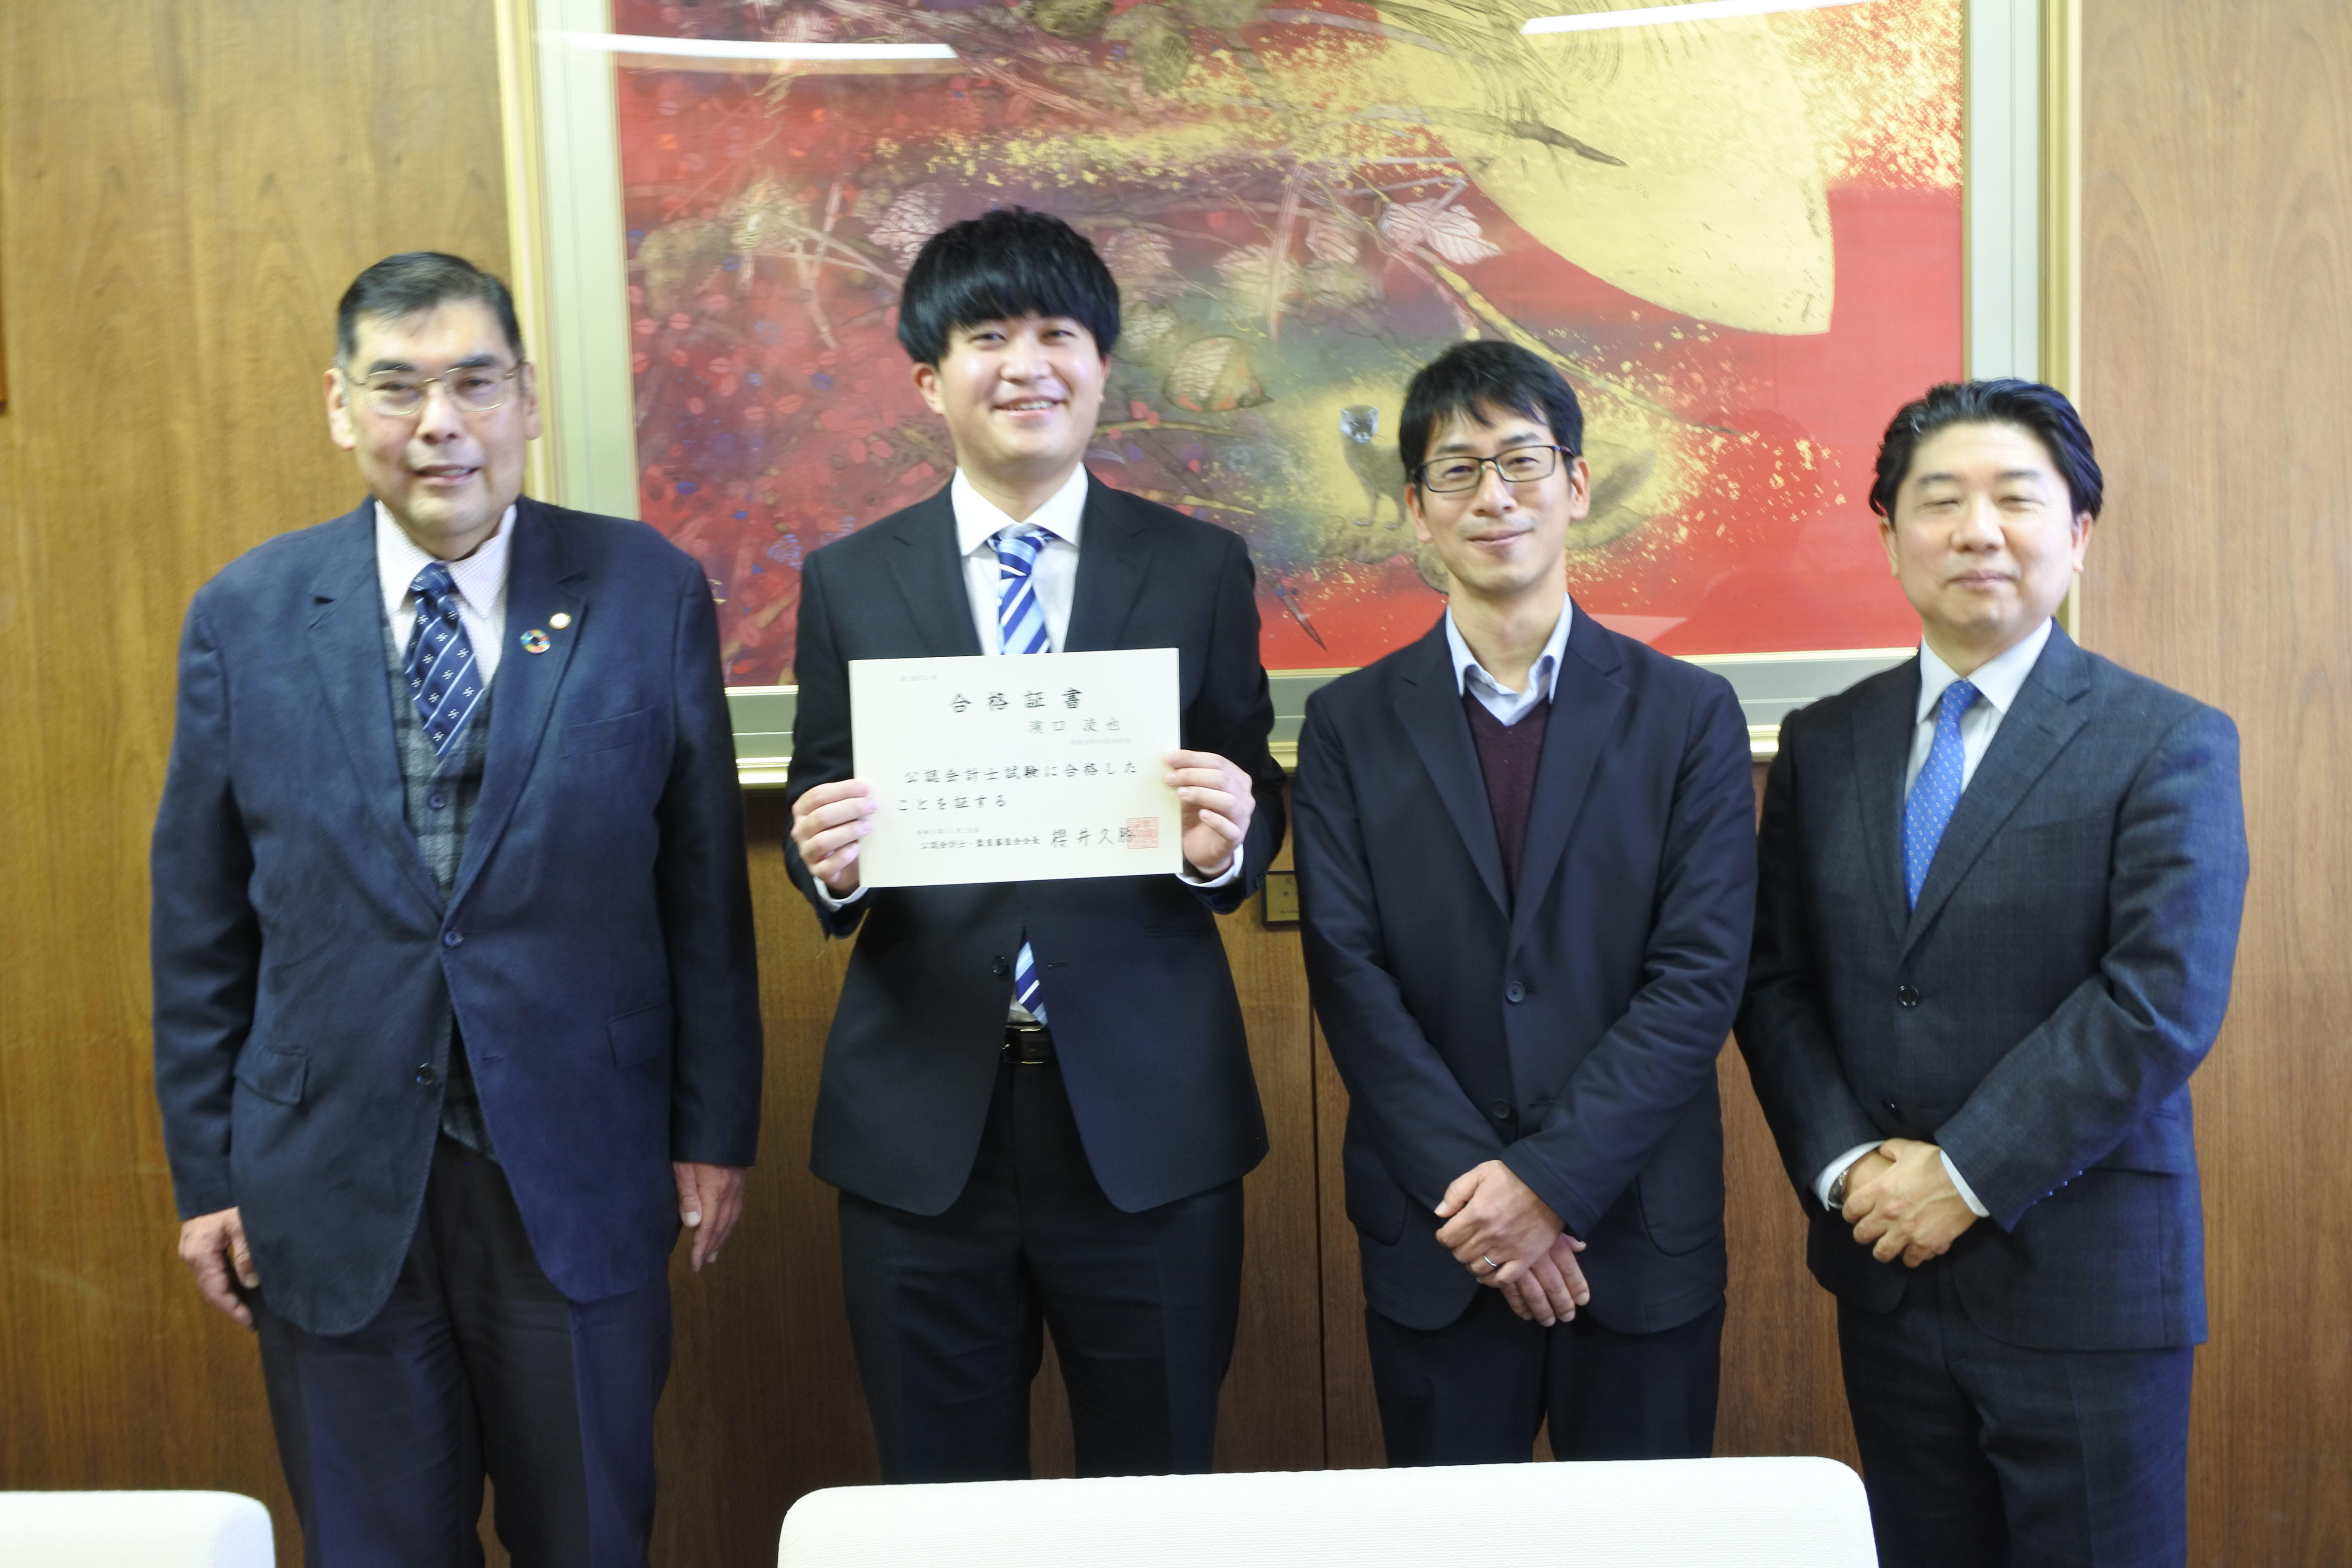 記念写真に納まる（左から）小原章裕学長、濱口凌也さん、田澤宗裕教授、田代樹彦学部長